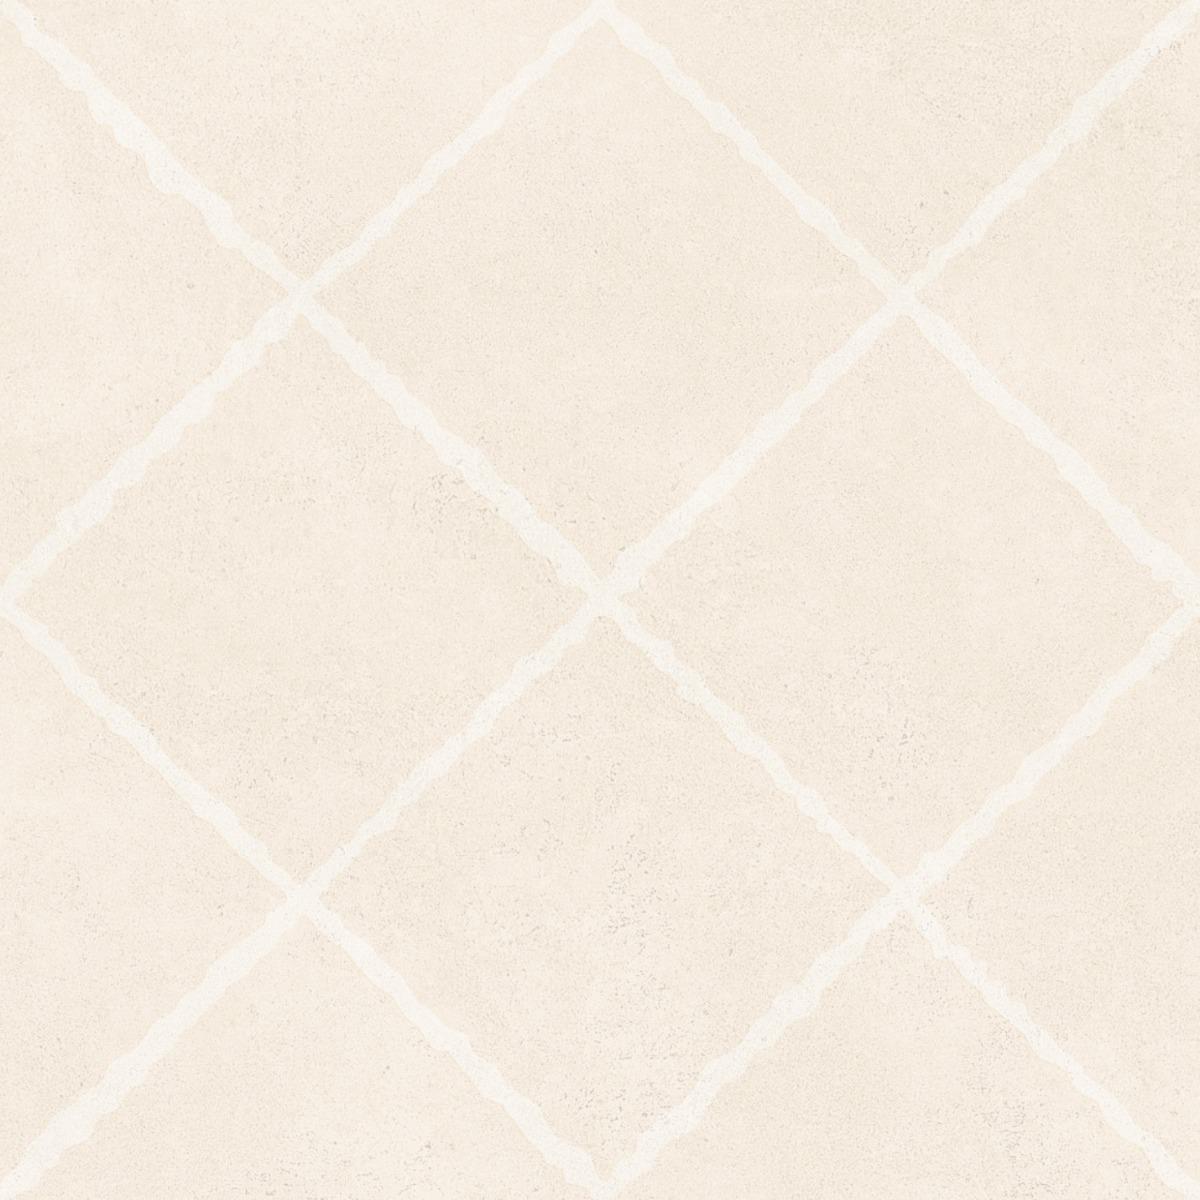 Matte Finish Tiles for Bathroom Tiles, Kitchen Tiles, Balcony Tiles, Terrace Tiles